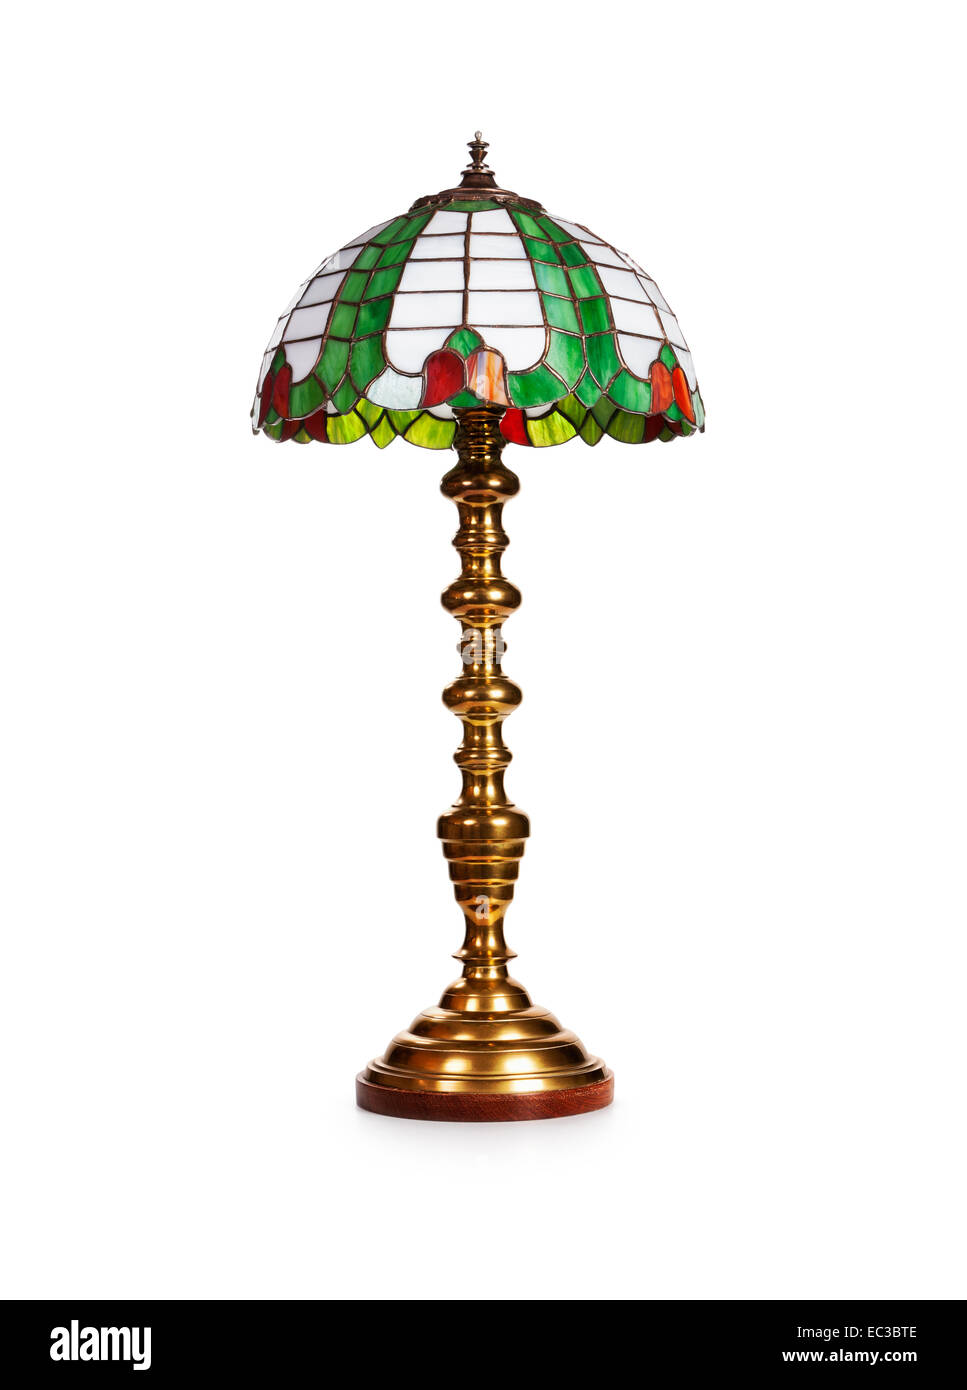 Tiffany lampe de table en verre élégante isolé sur fond blanc. Objet Avec clipping path Banque D'Images